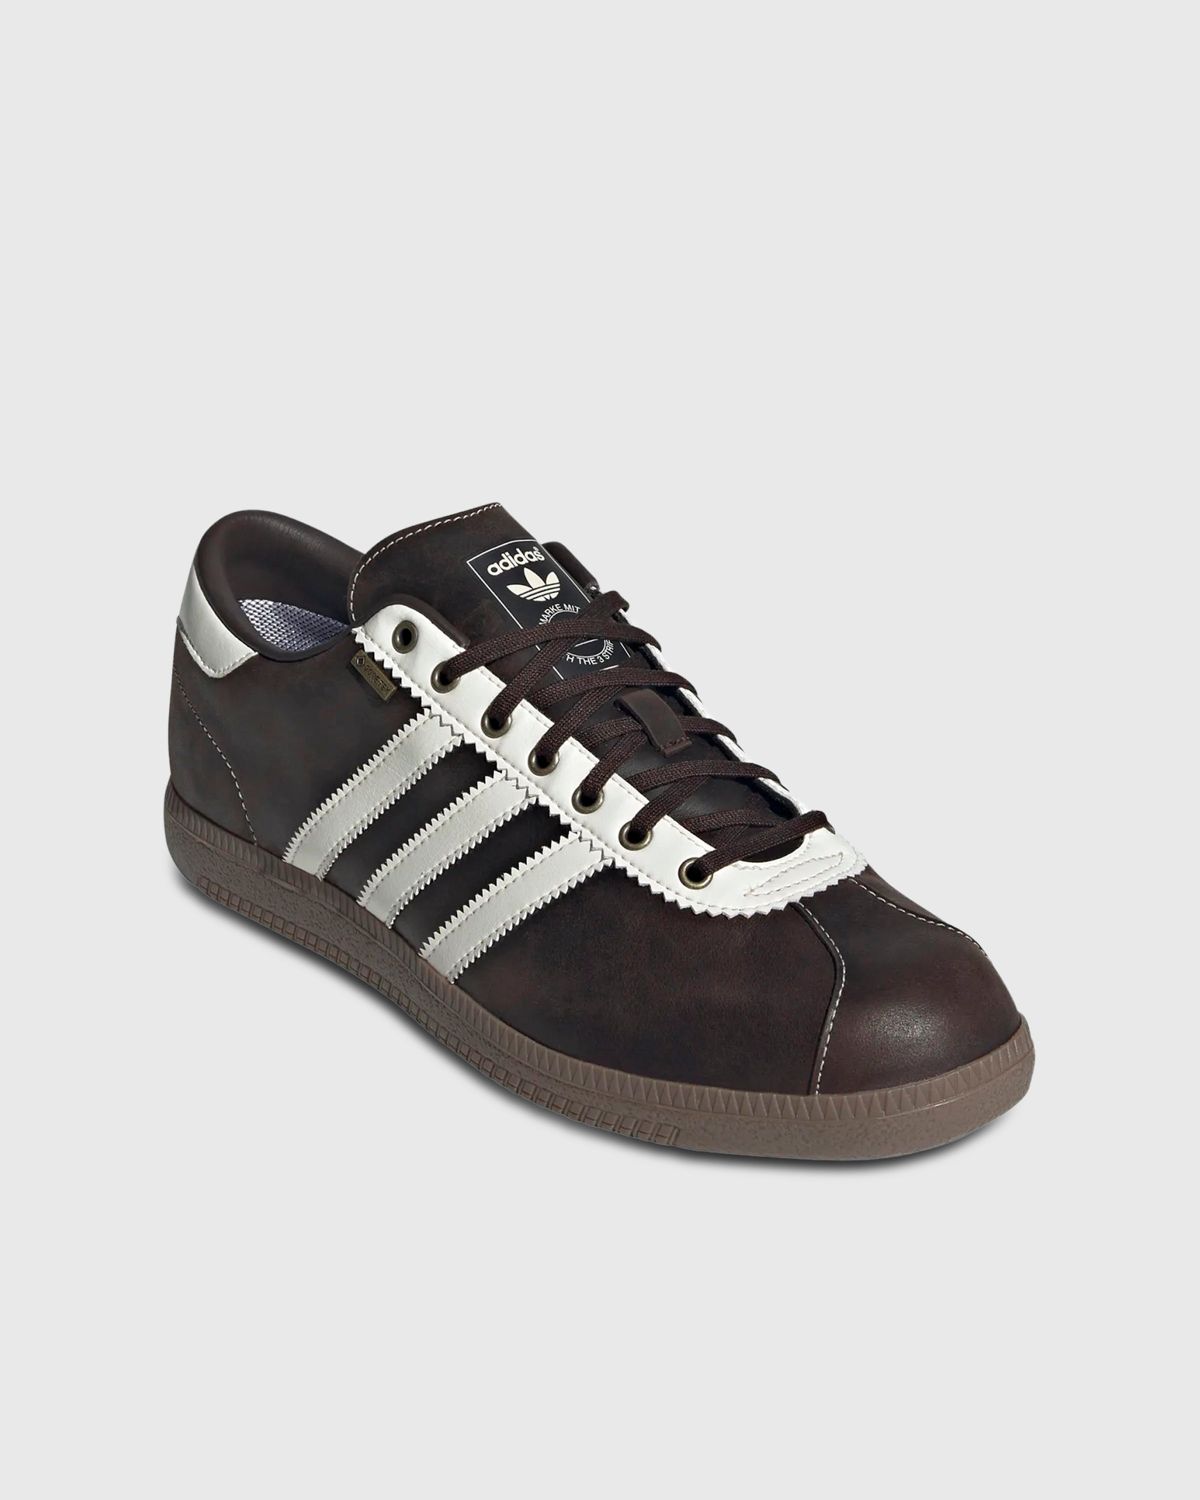 Adidas – Bern GTX Dark Brown